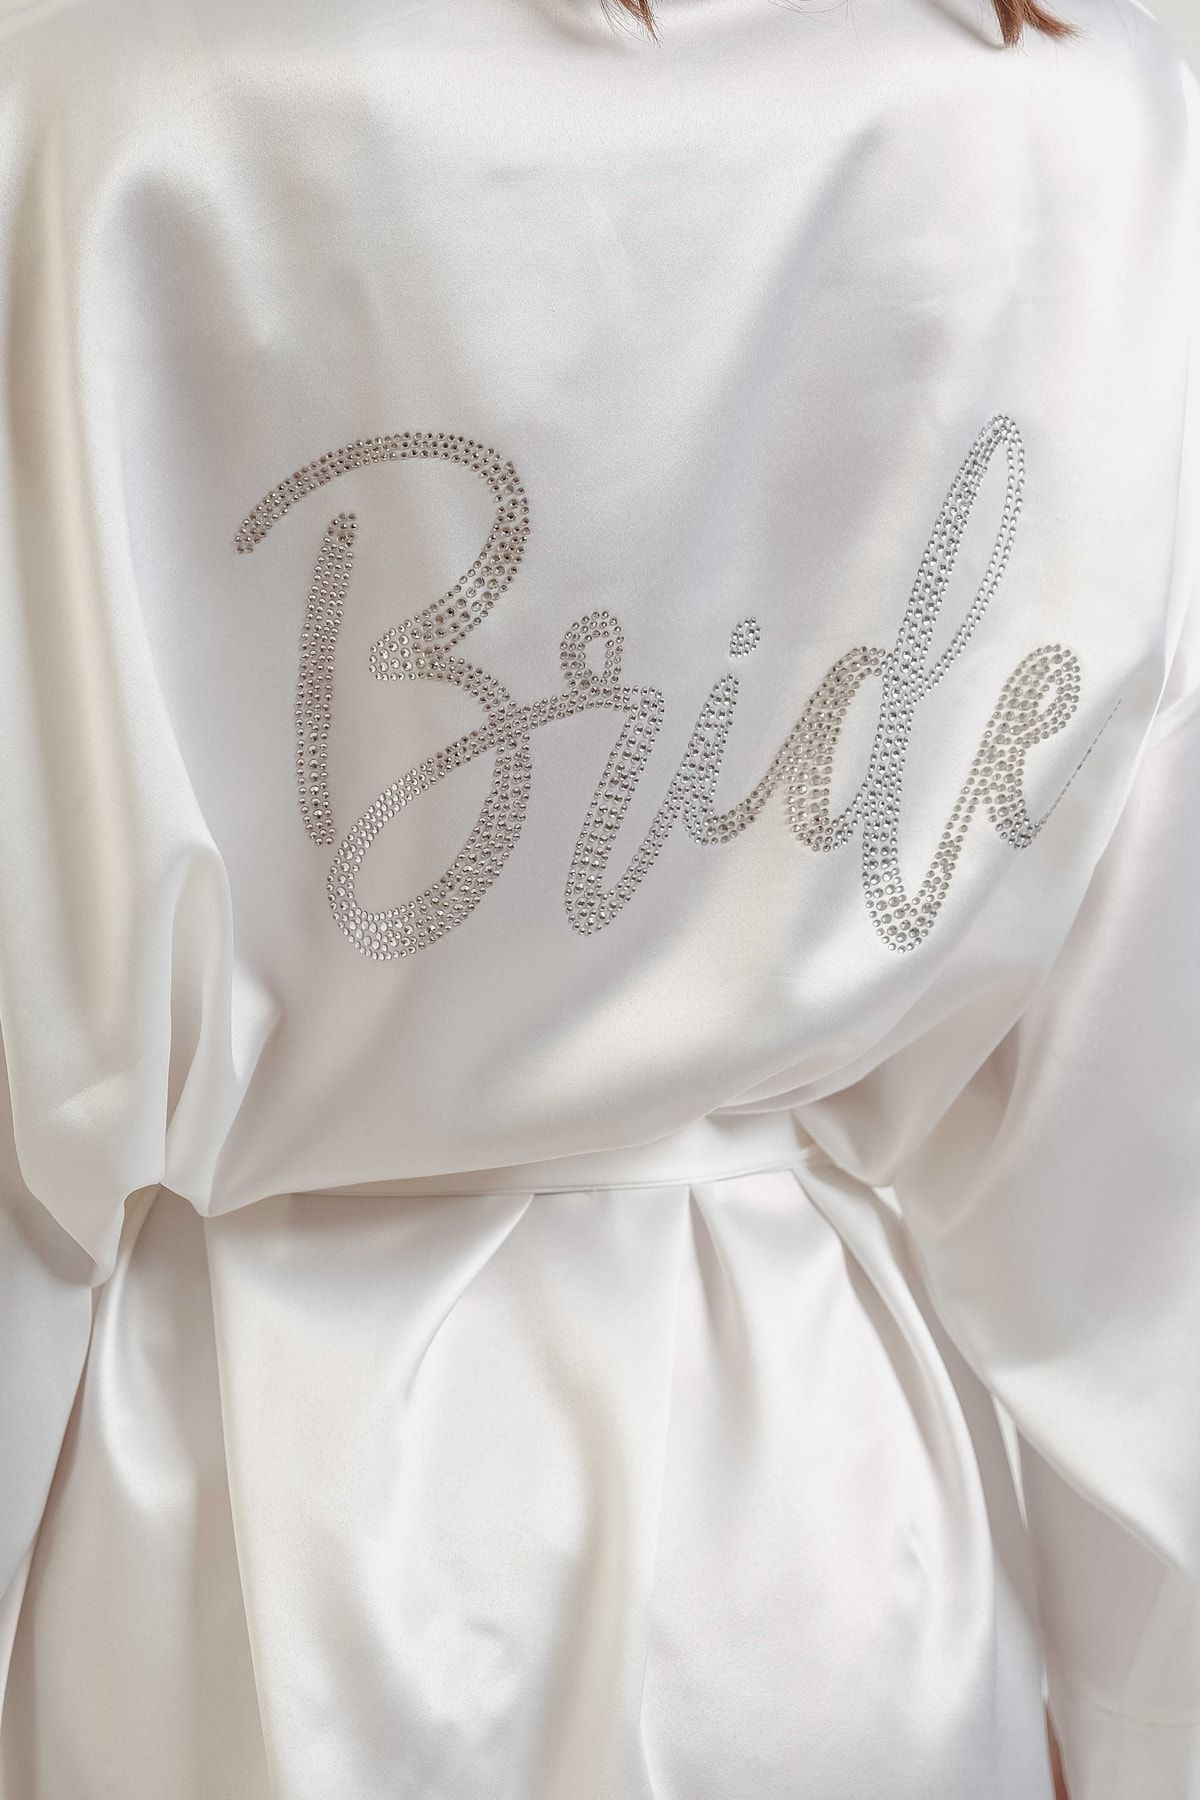 MK MODA ATELİER Kadın Gelin Beyaz Mini Kuşaklı Şık Taşlı Bride Sabahlık